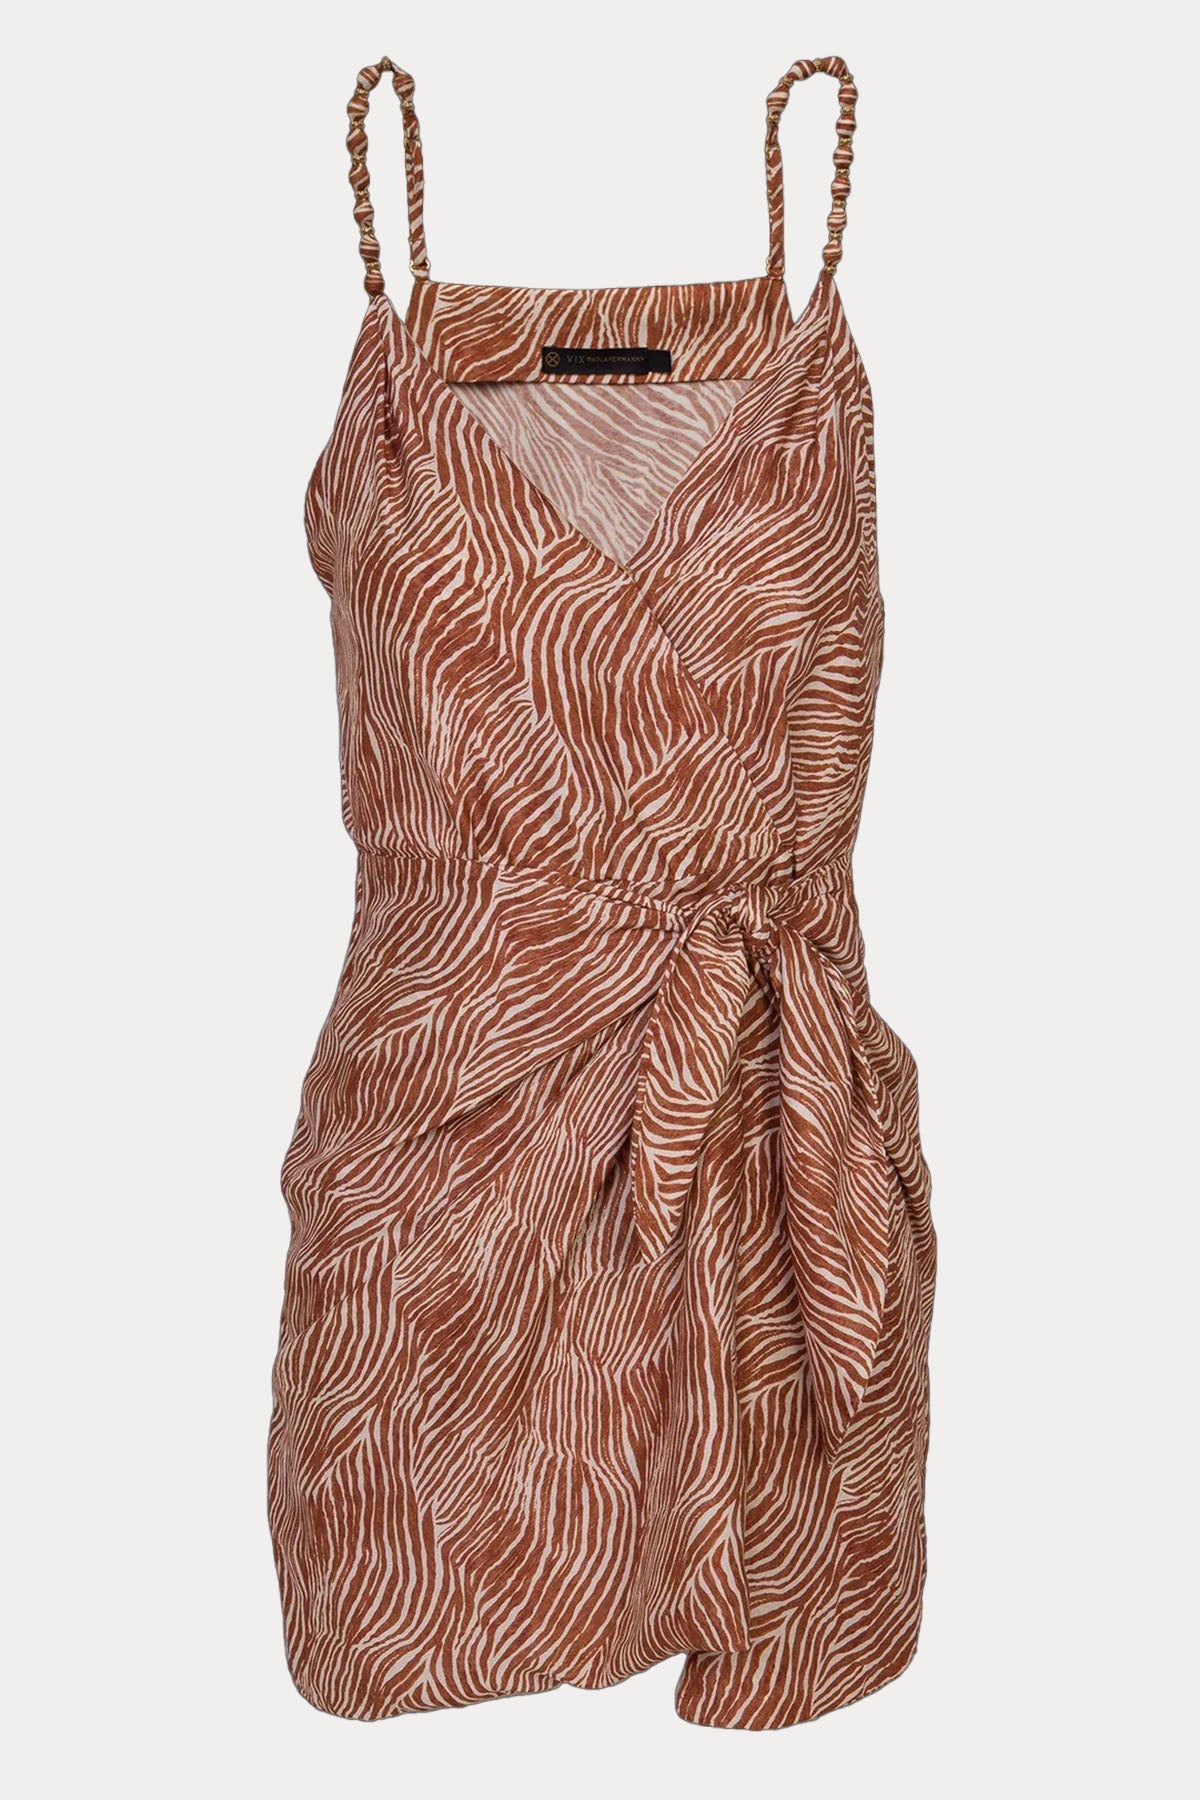 Vix Gisa İpekli Askılı V Yaka Mini Elbise-Libas Trendy Fashion Store